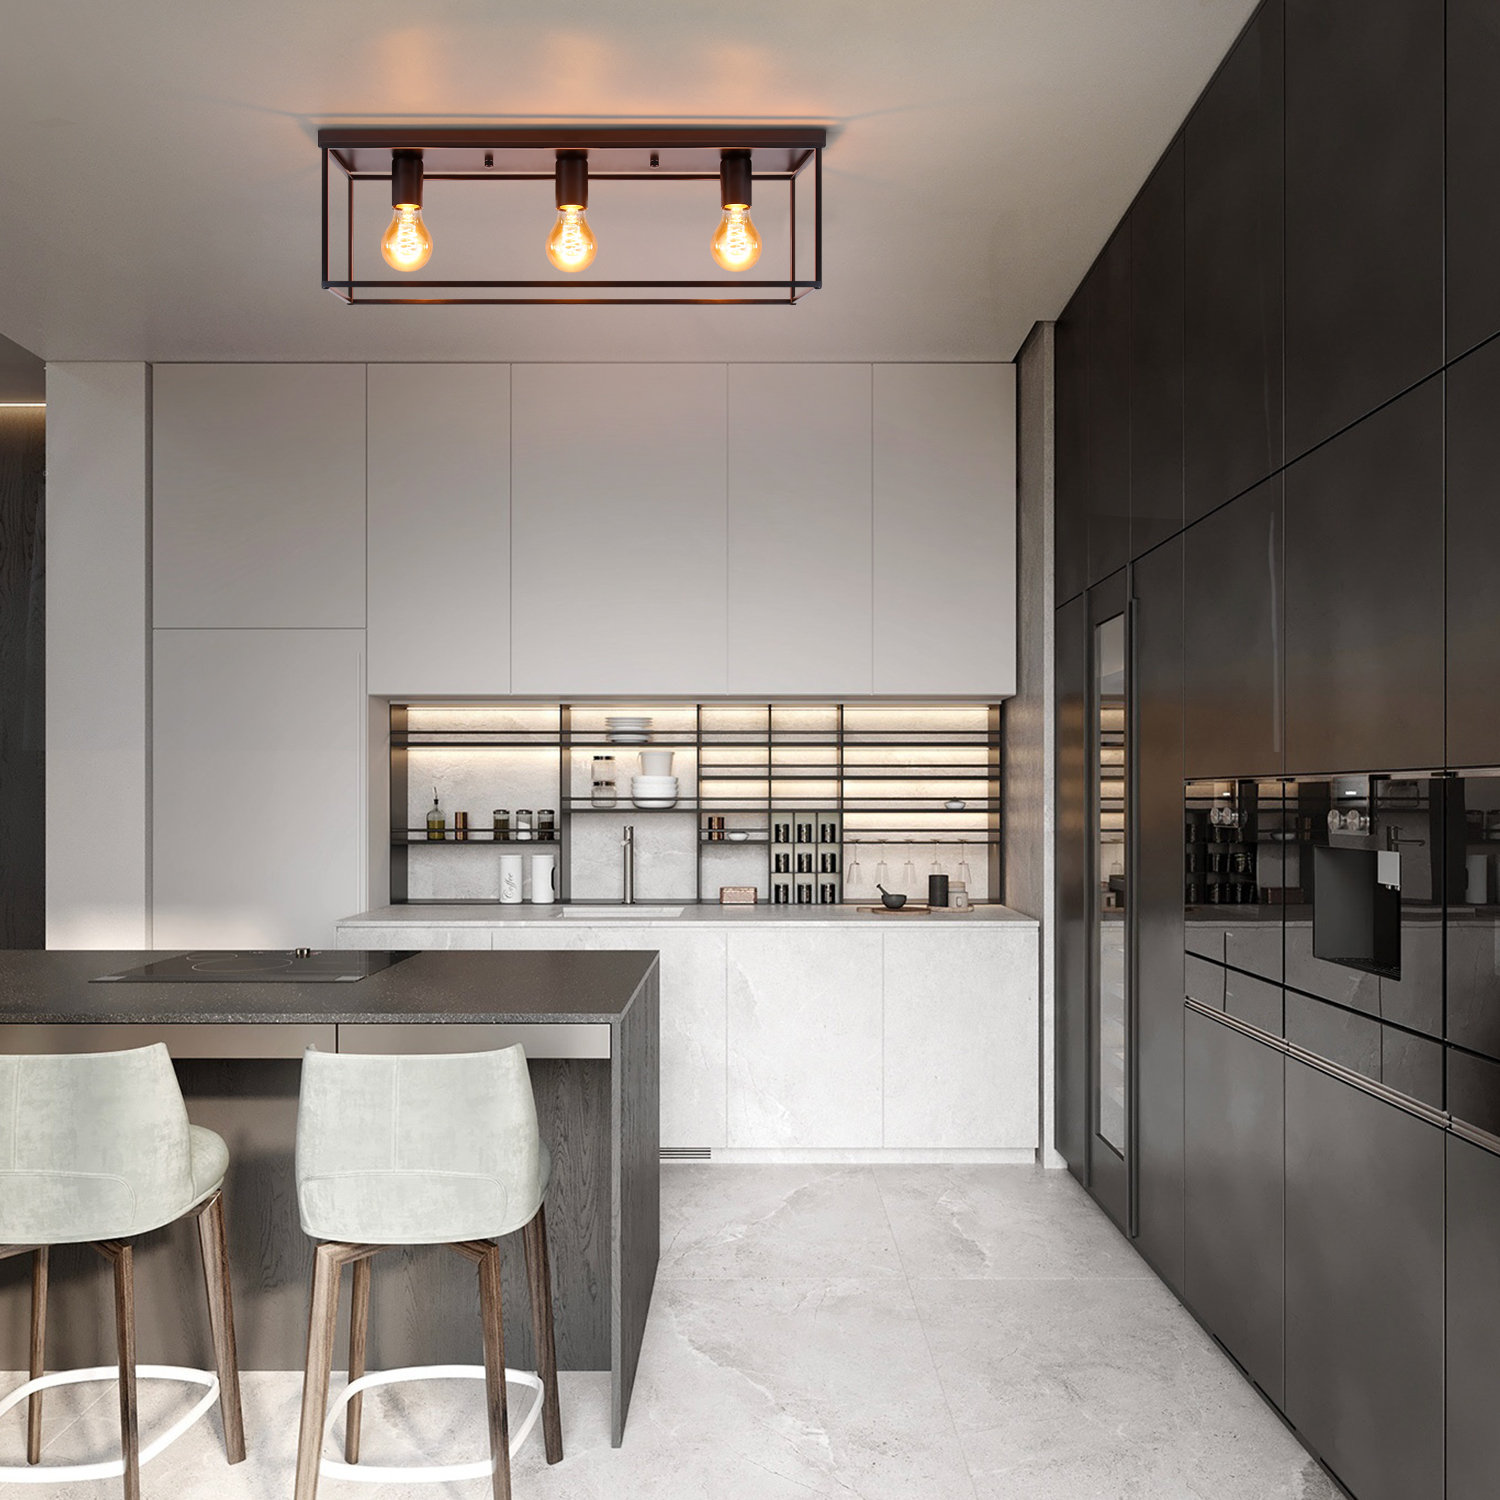 ZMH Deckenleuchte LED Deckenlampe Wohnzimmer Schwarze Küchenlampe